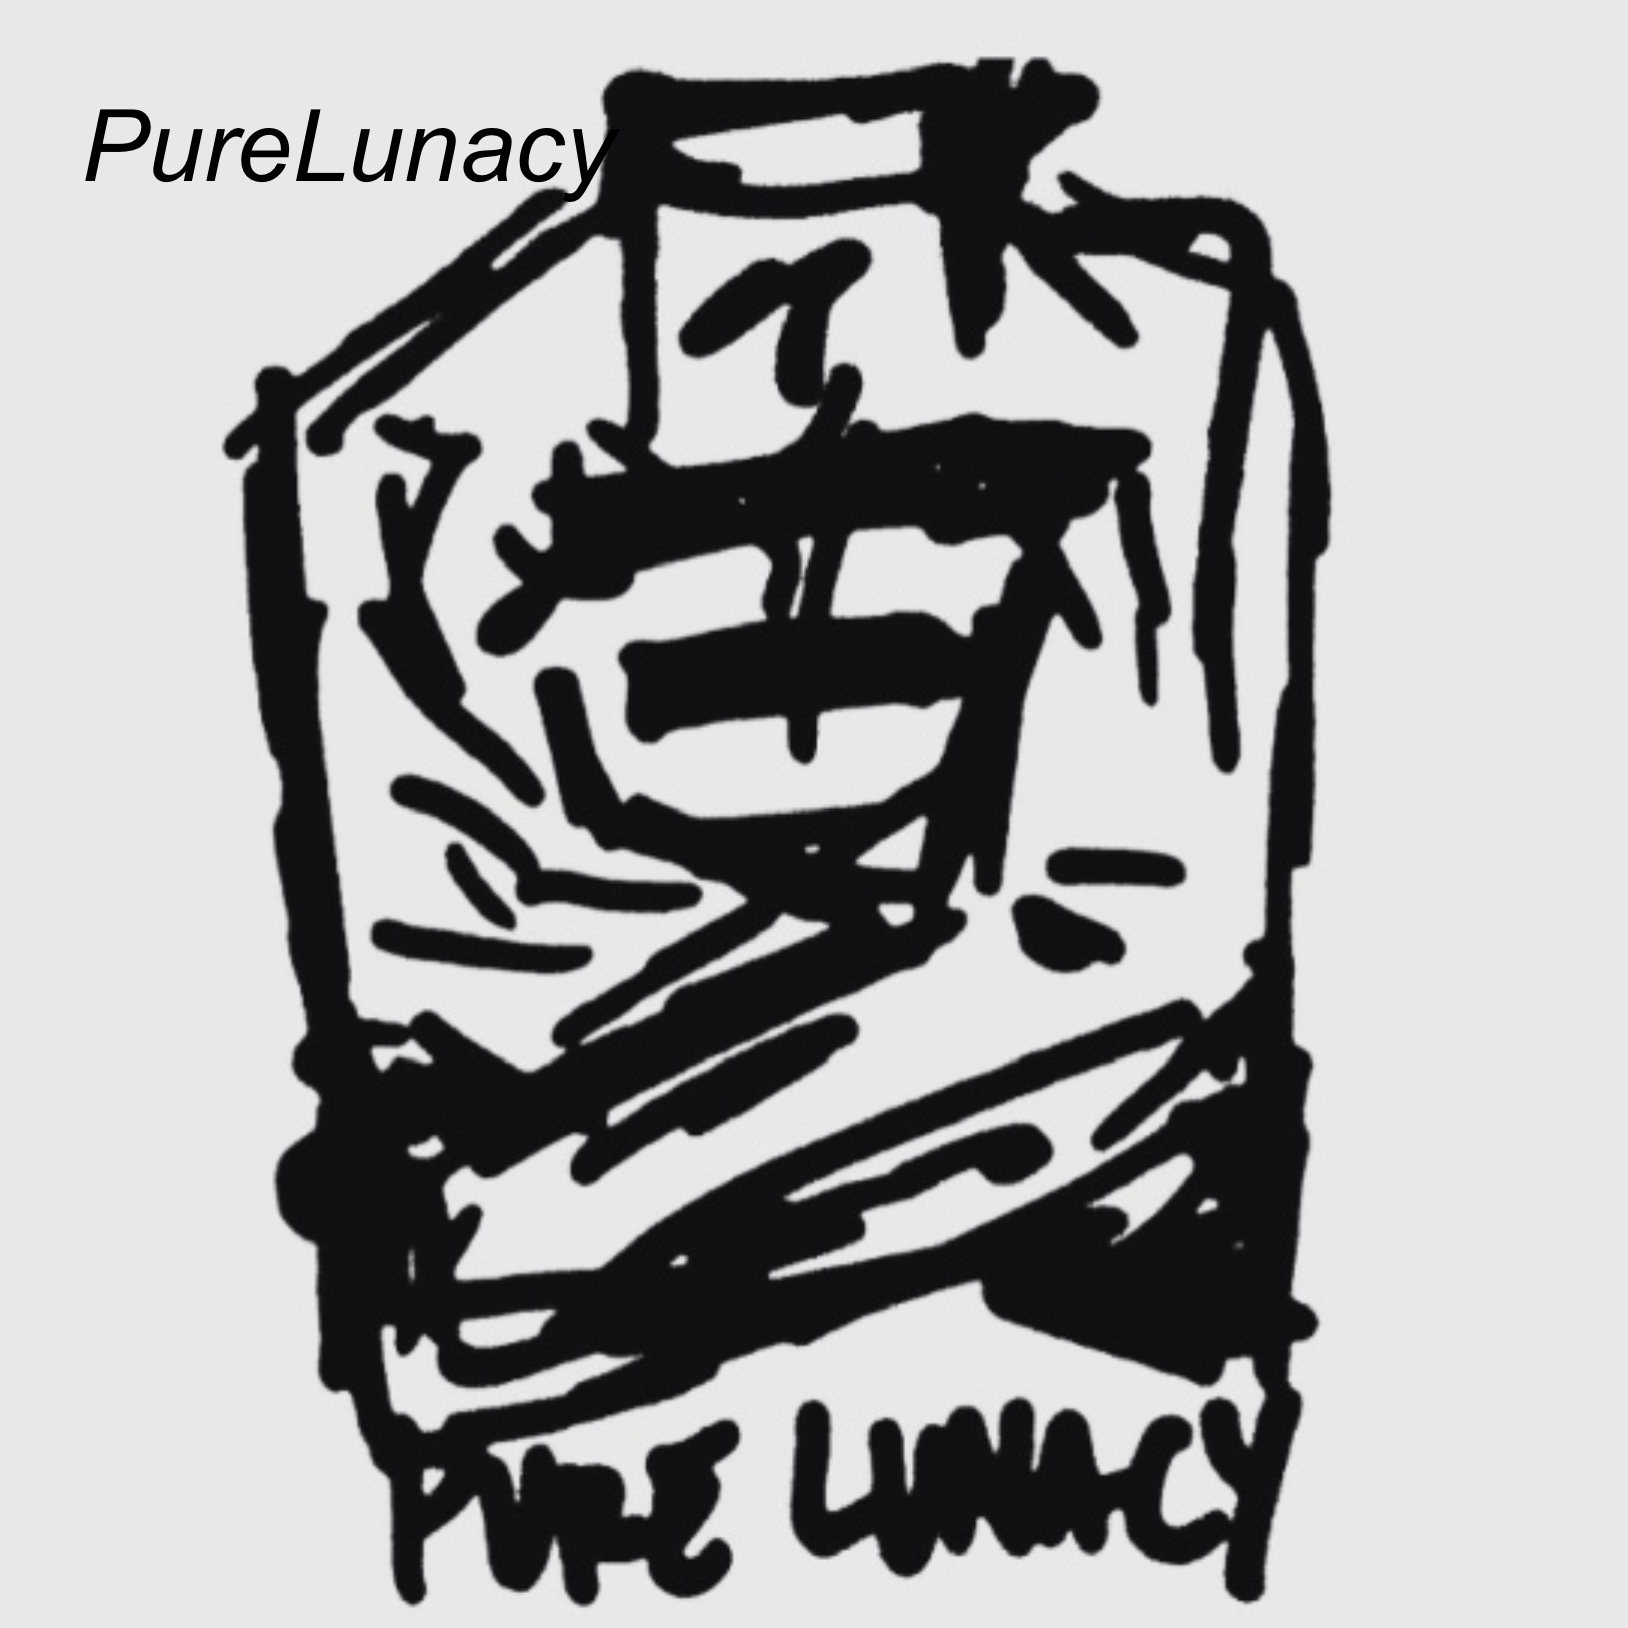 PureLunacy